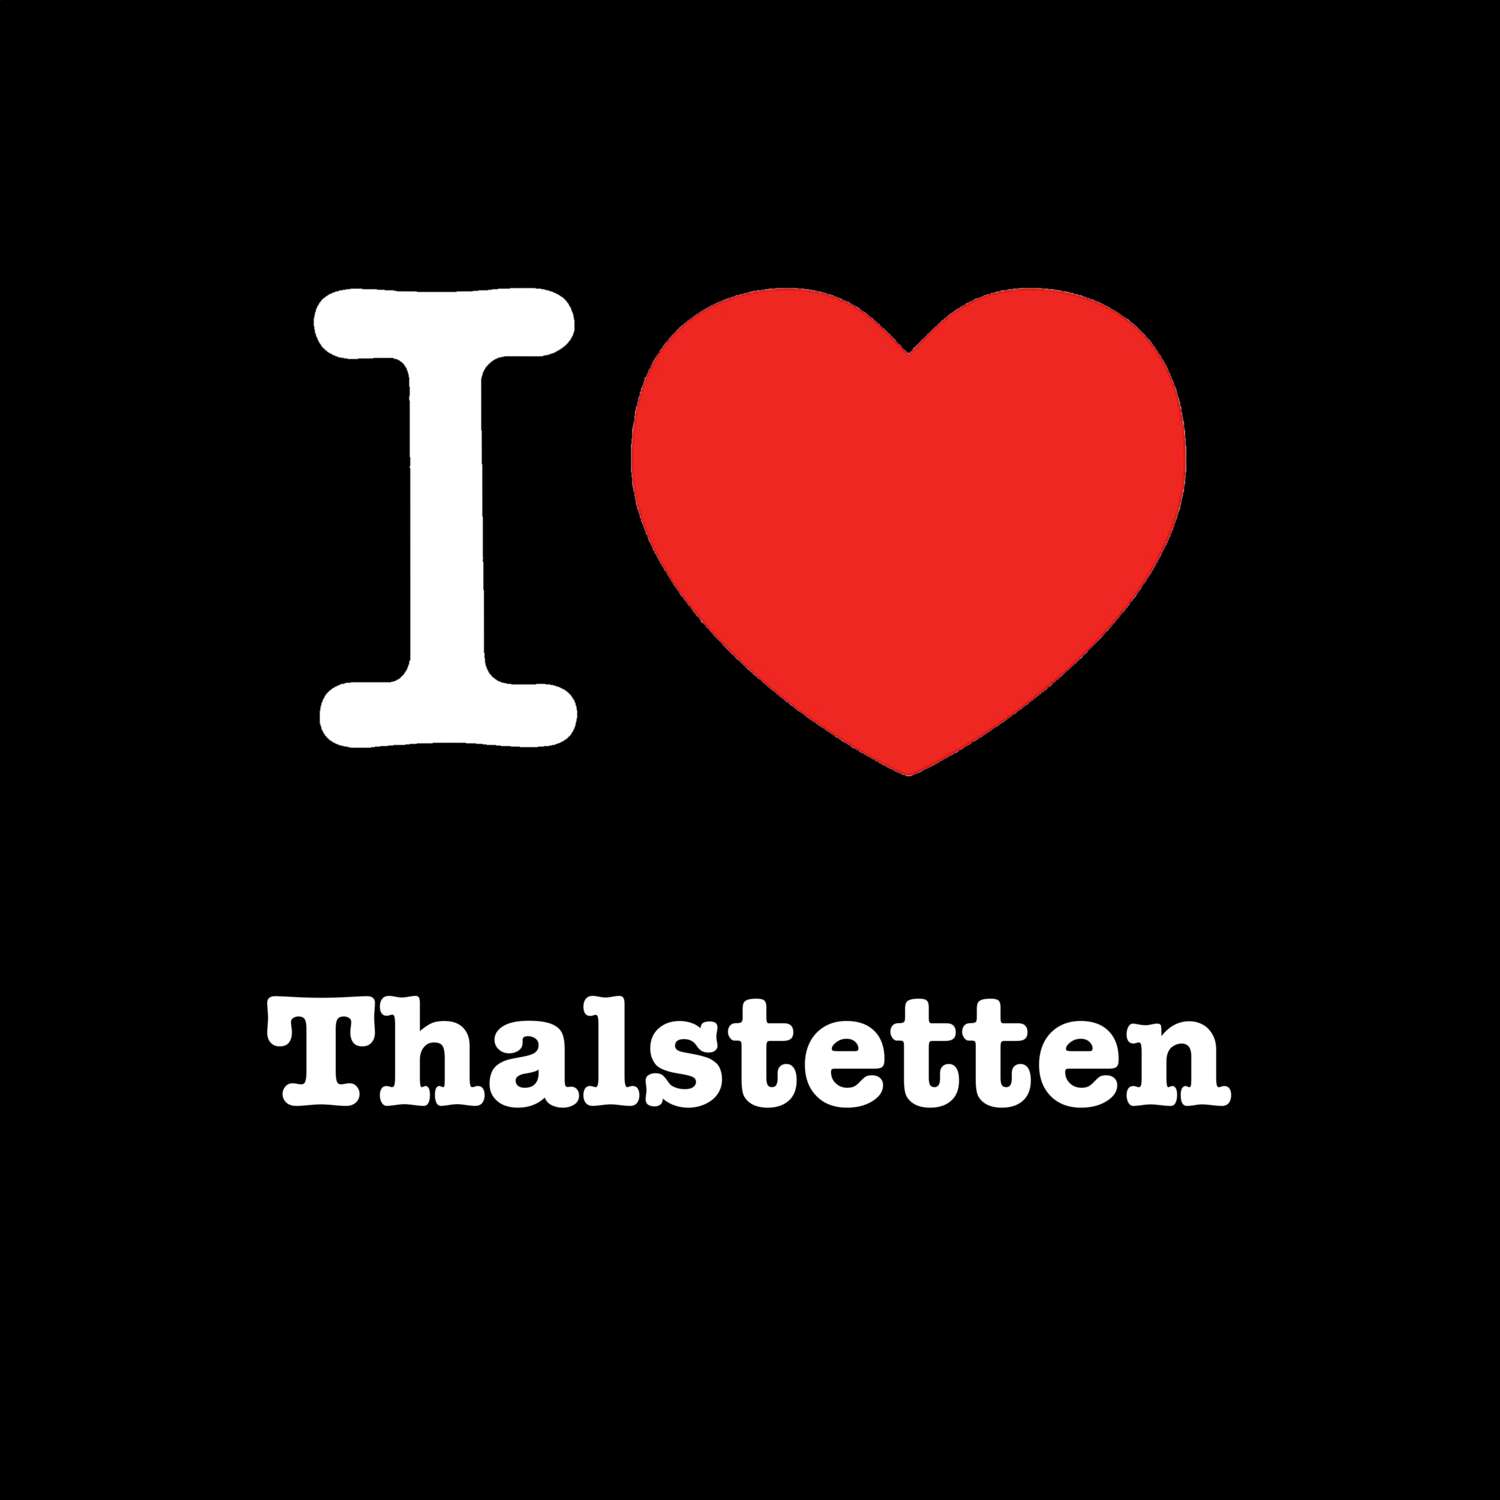 Thalstetten T-Shirt »I love«